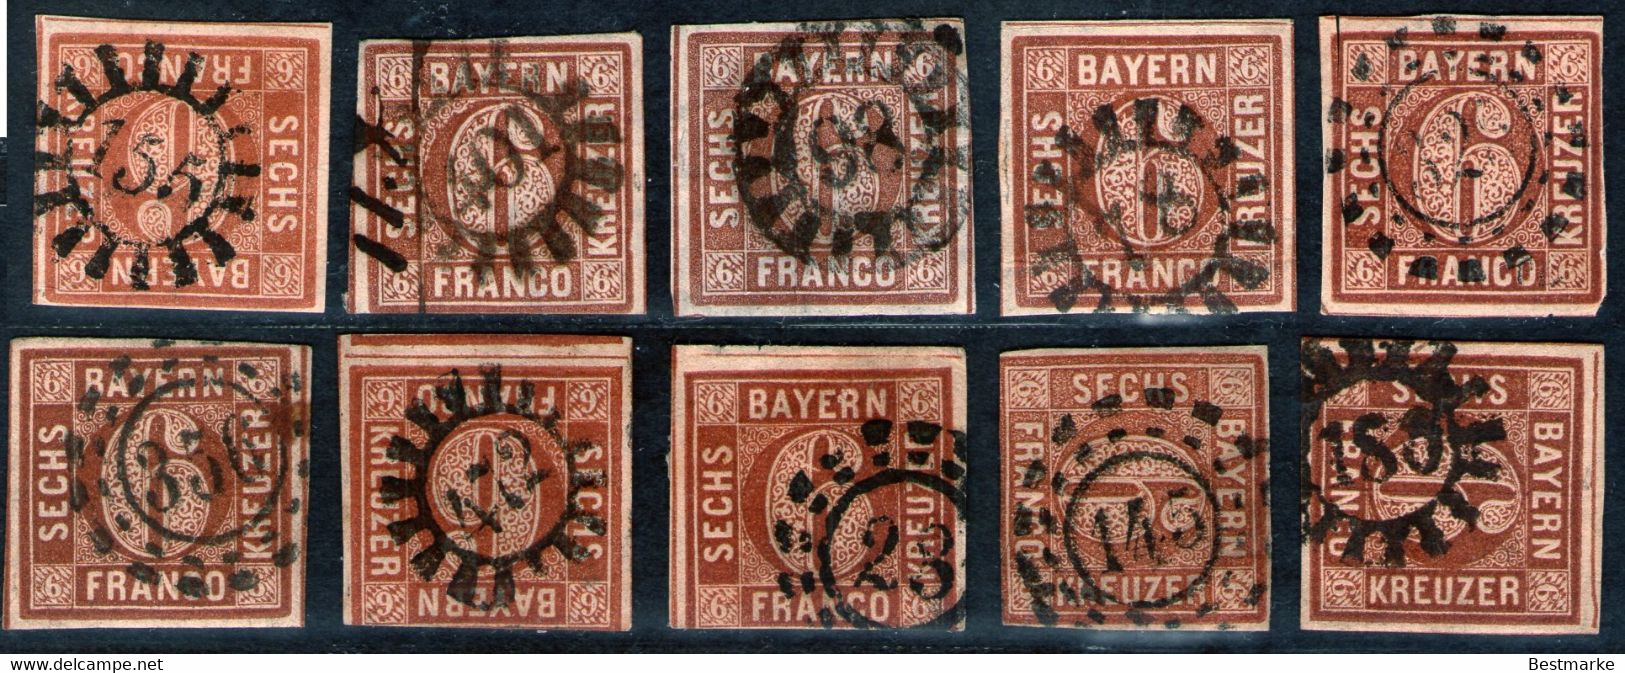 Bayern Lot 2461 - 10 Mal Nr. 4 - Stempel GMR Und OMR, Farben, Papiersorten, Breitrandige Stücke - Collezioni